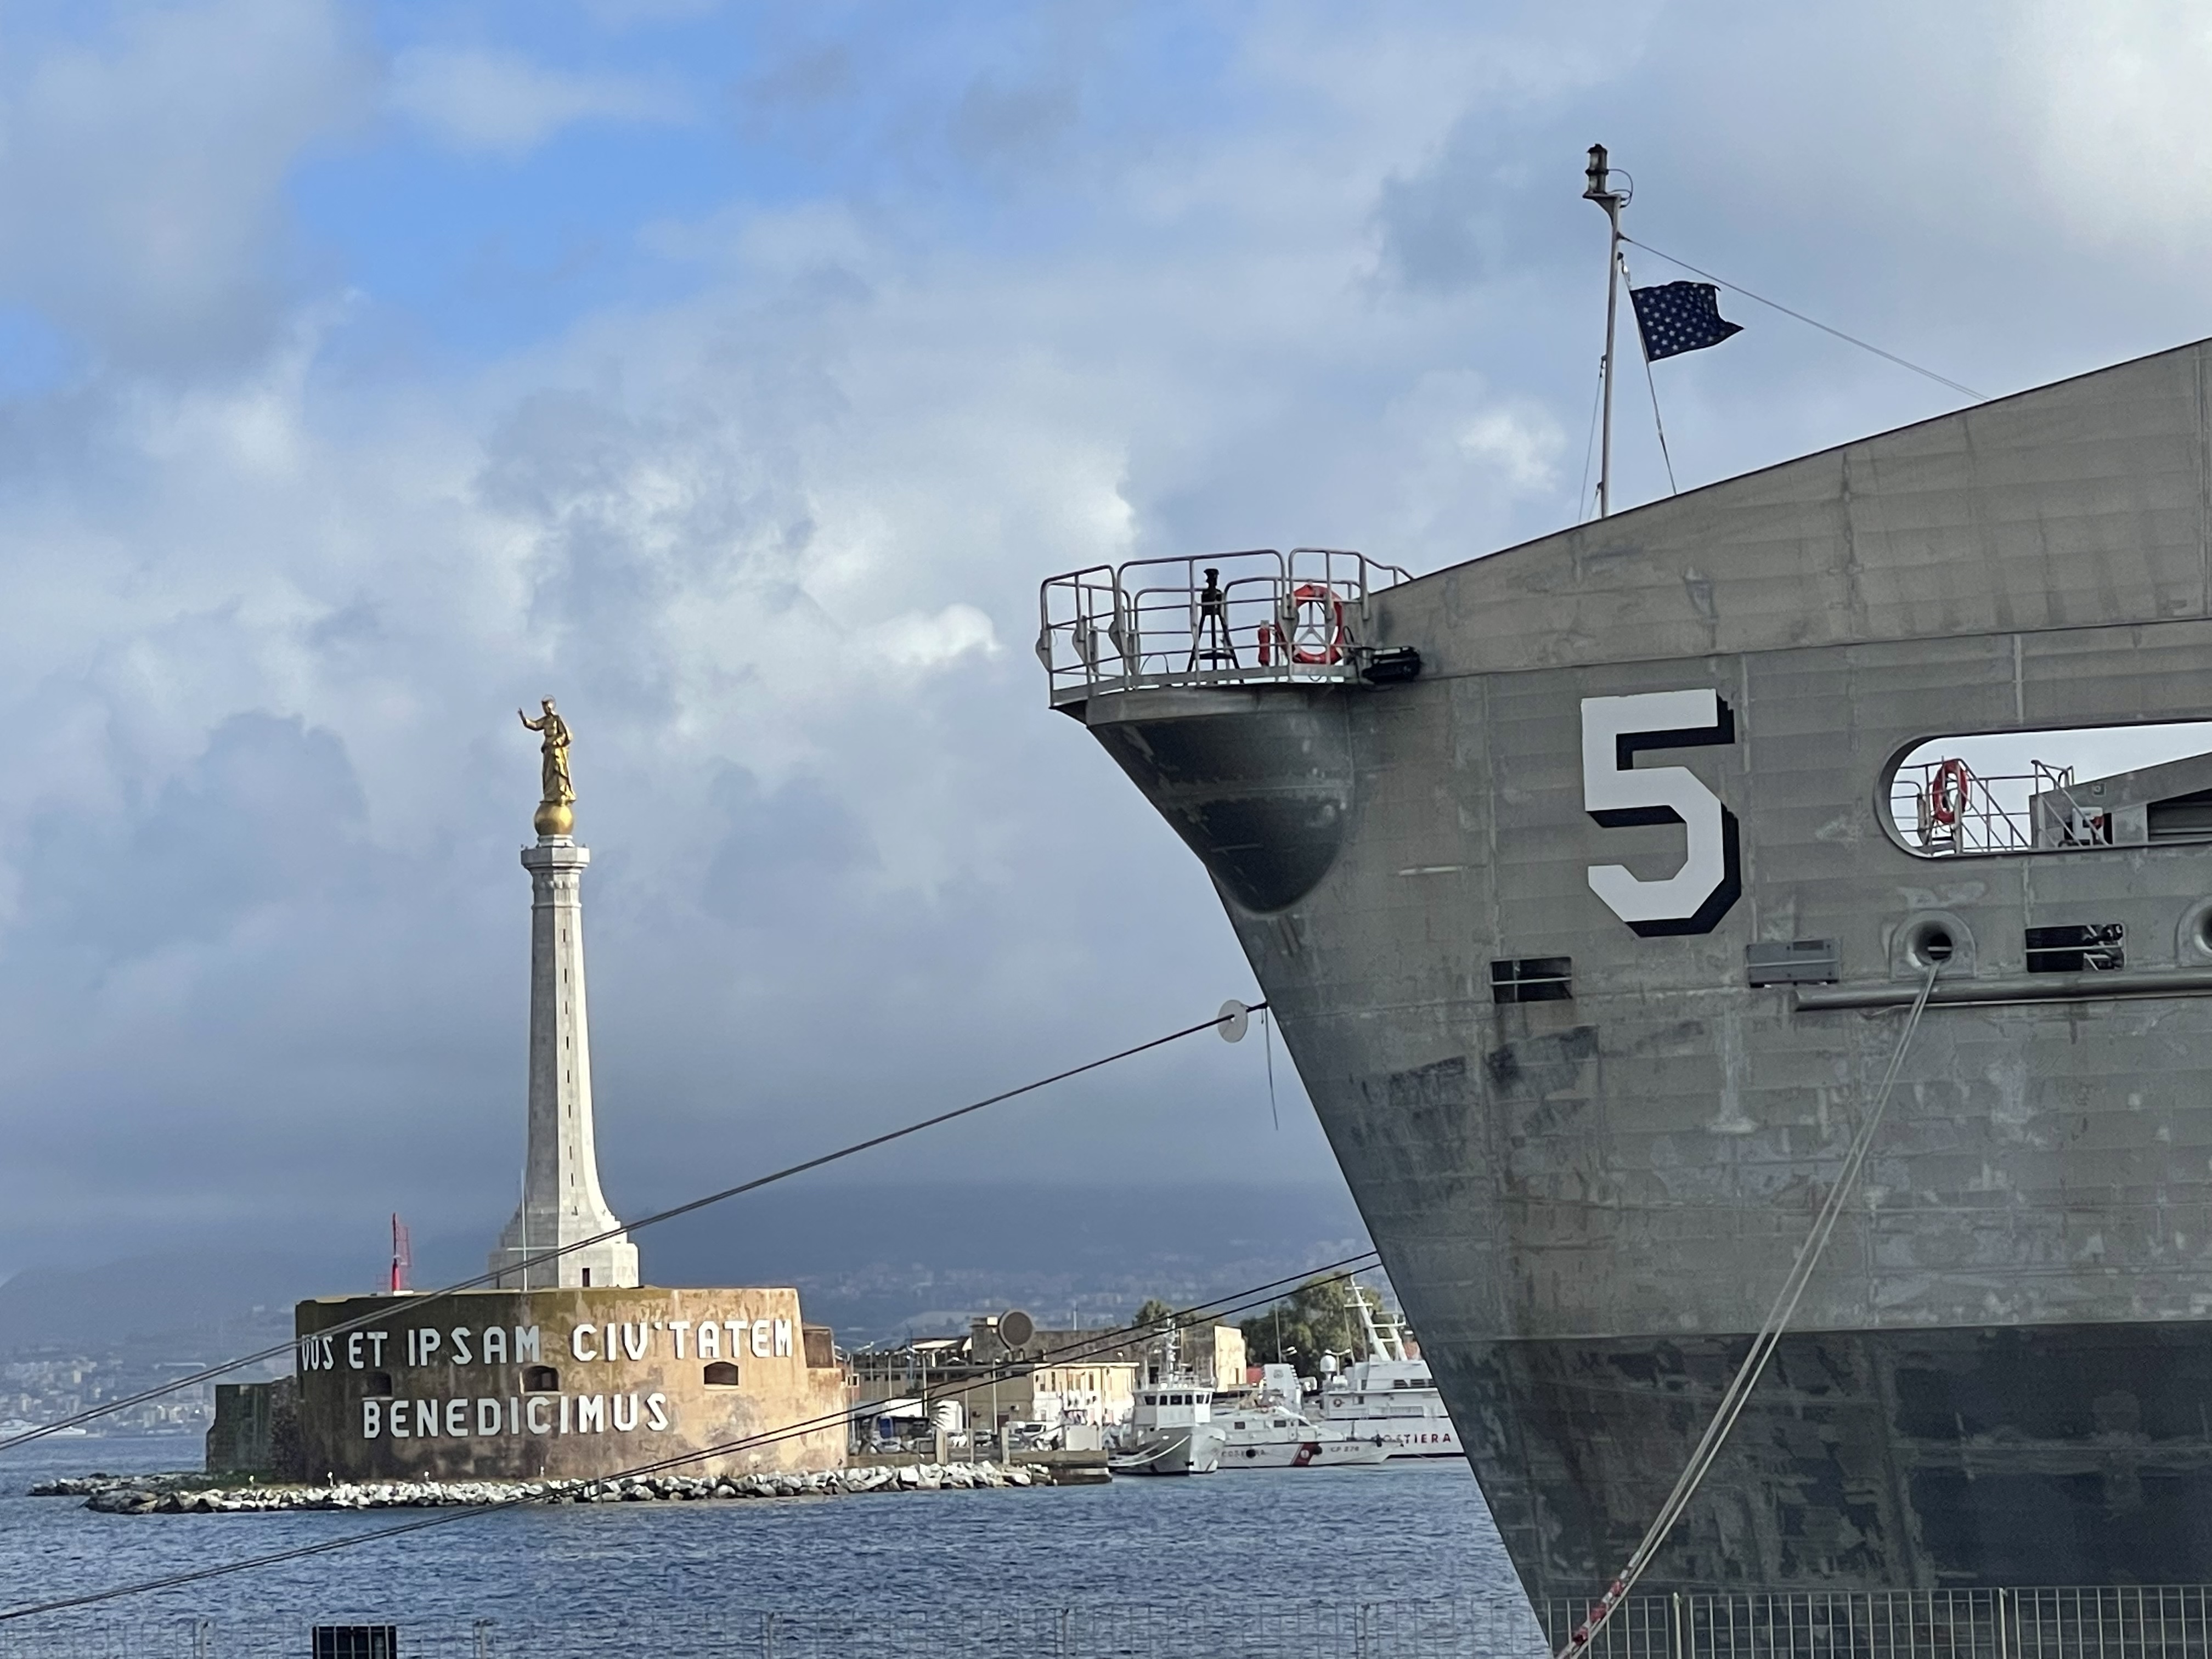 La Marina Usa sceglie Napoli per il comando della Sesta Flotta 